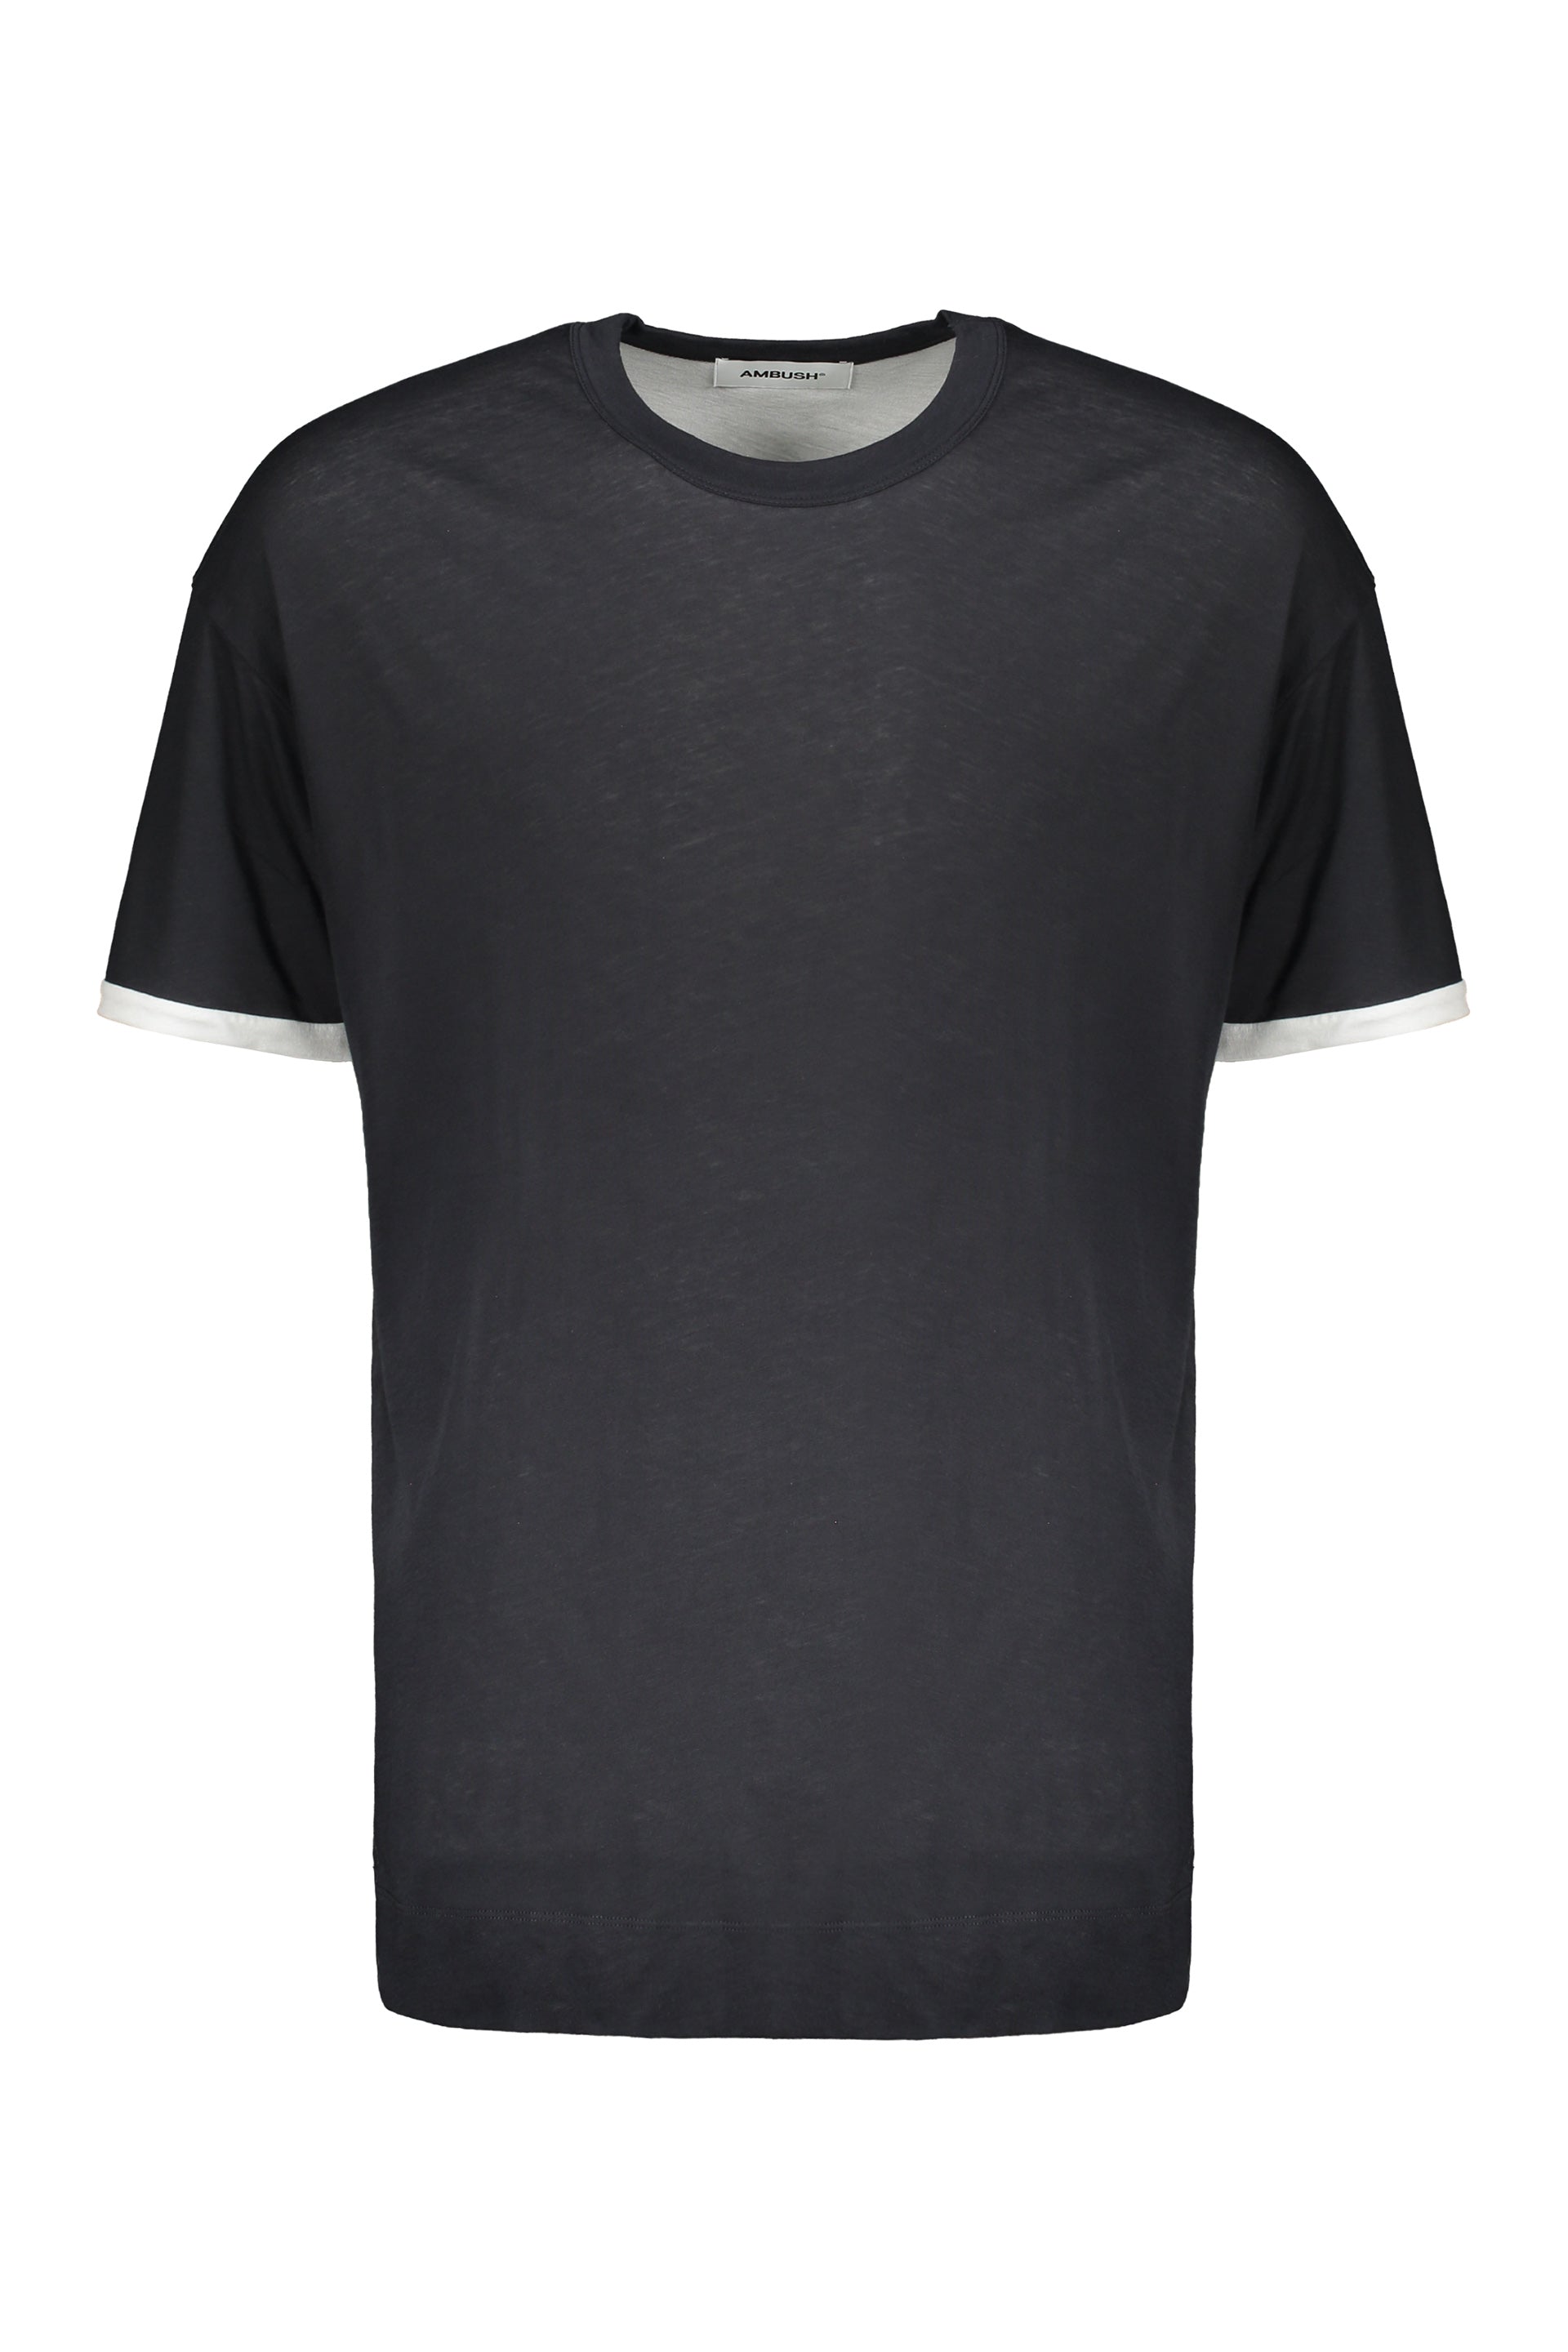 AMBUSH-OUTLET-SALE-Cotton-maxi-T-shirt-Shirts-S-ARCHIVE-COLLECTION.jpg